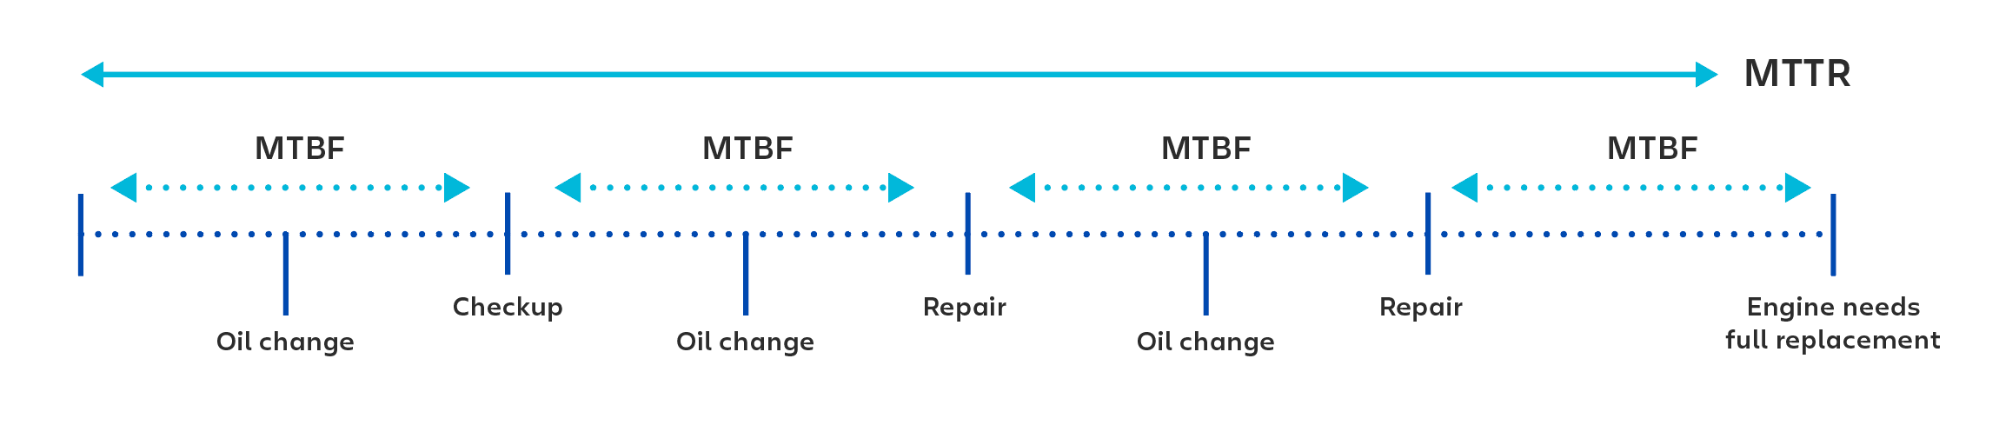 Визуальный пример использования MTBF (средней наработки на отказ) при расчете времени между проверками или восстановительными работами.